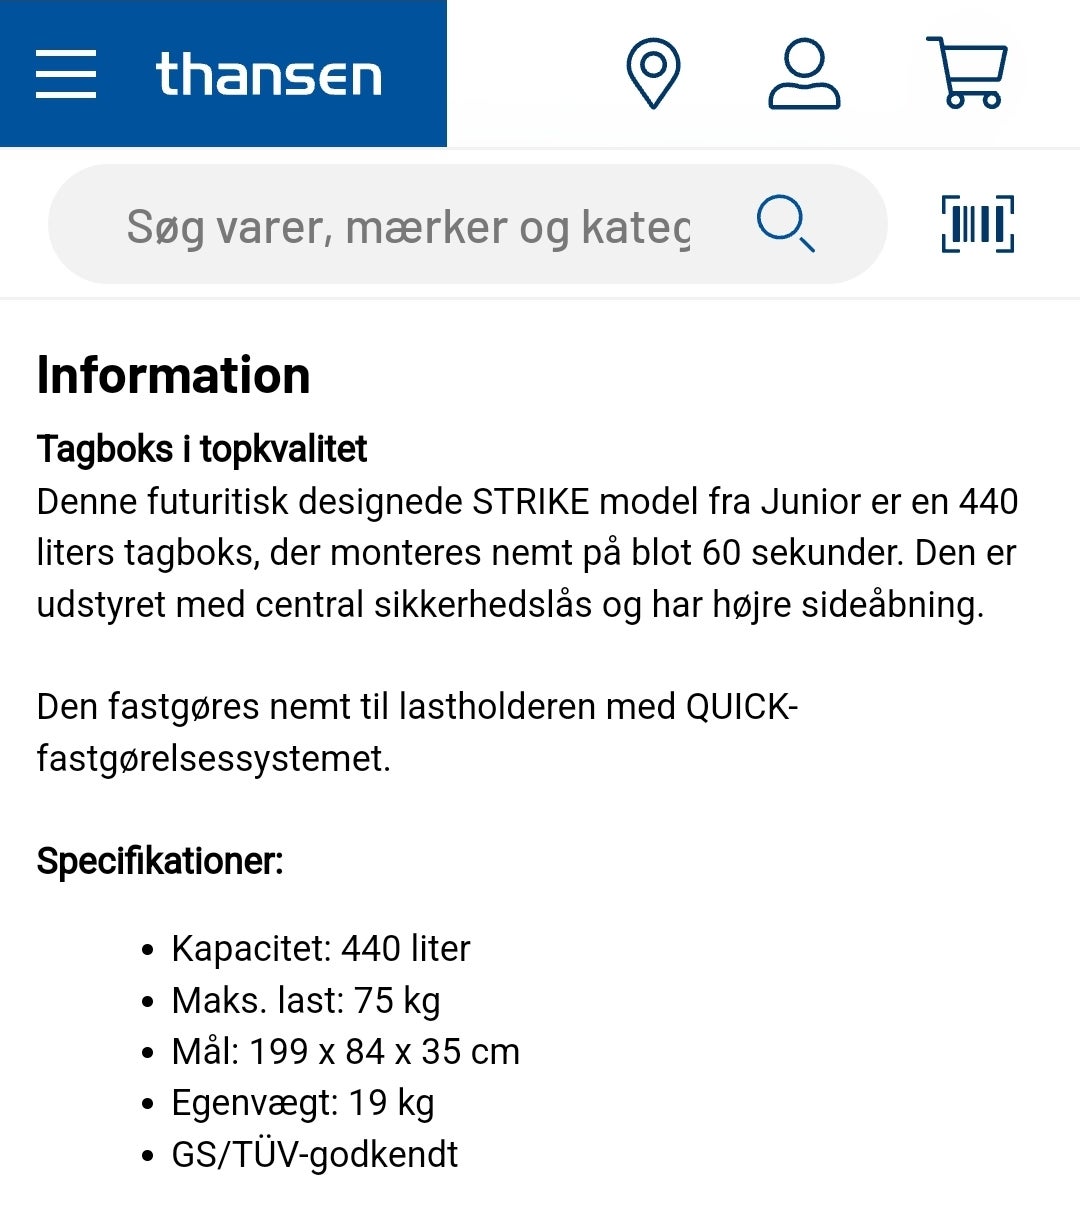 Tagboks, T Hansen Strike 440